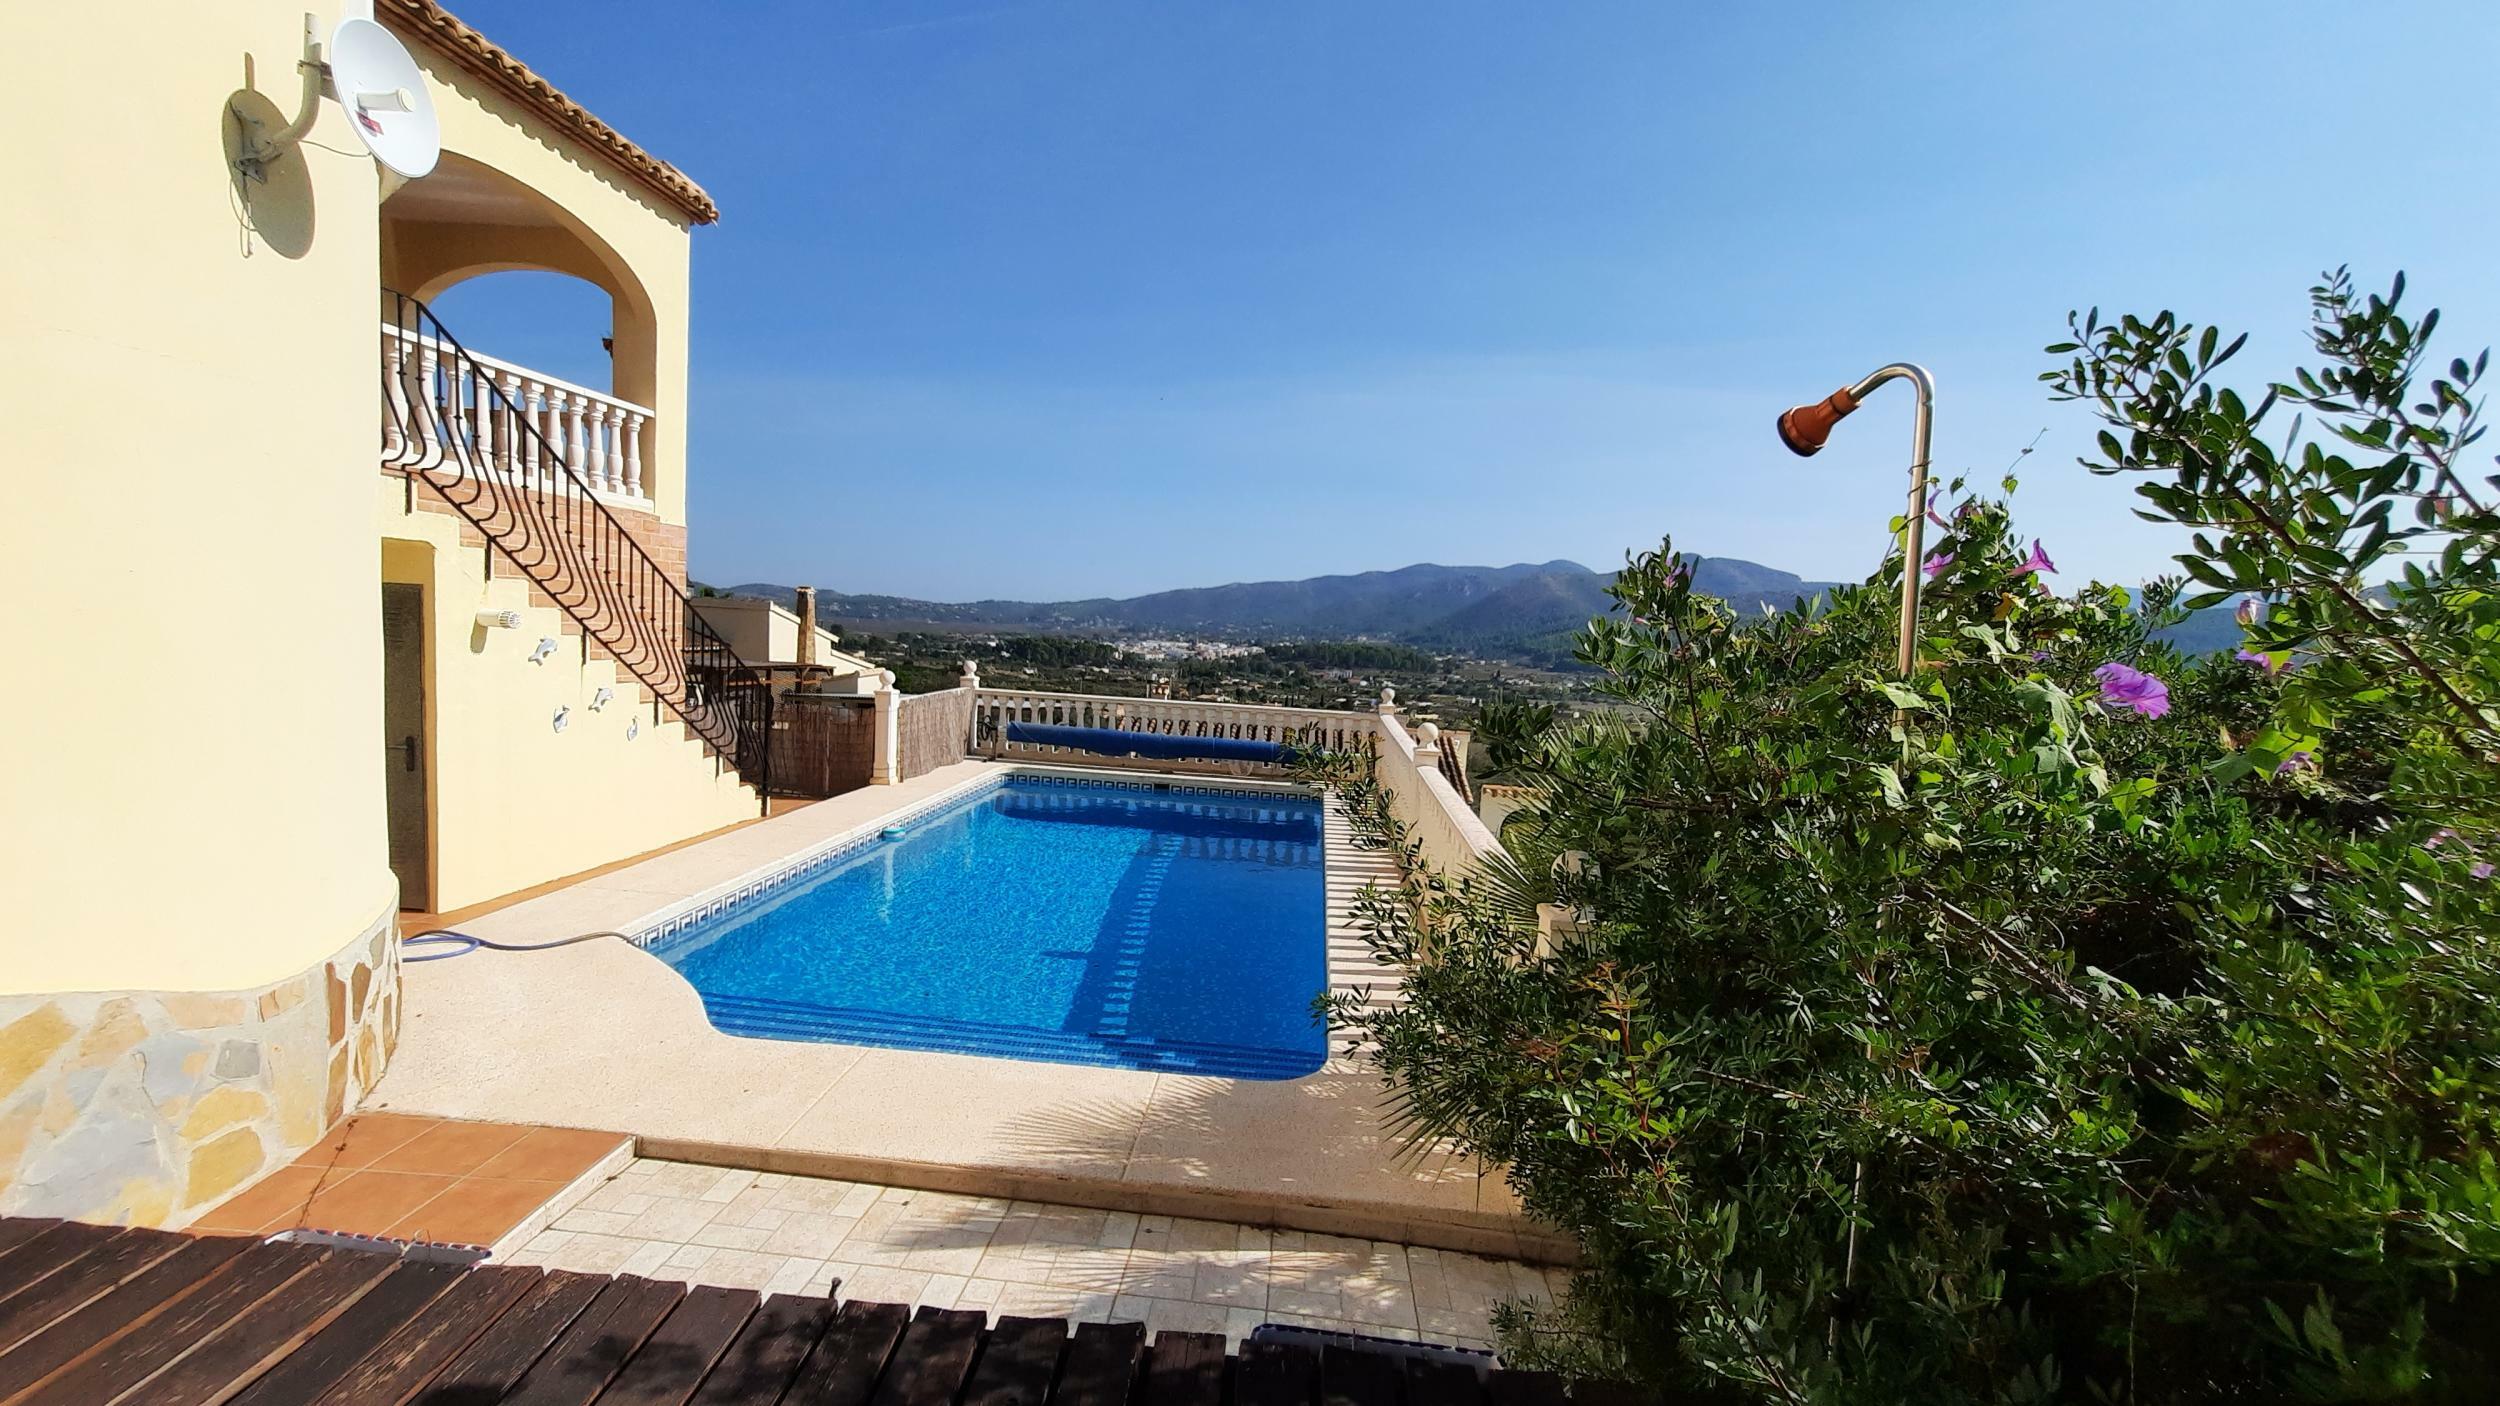 Charming Mediterranean style villa in Jalon